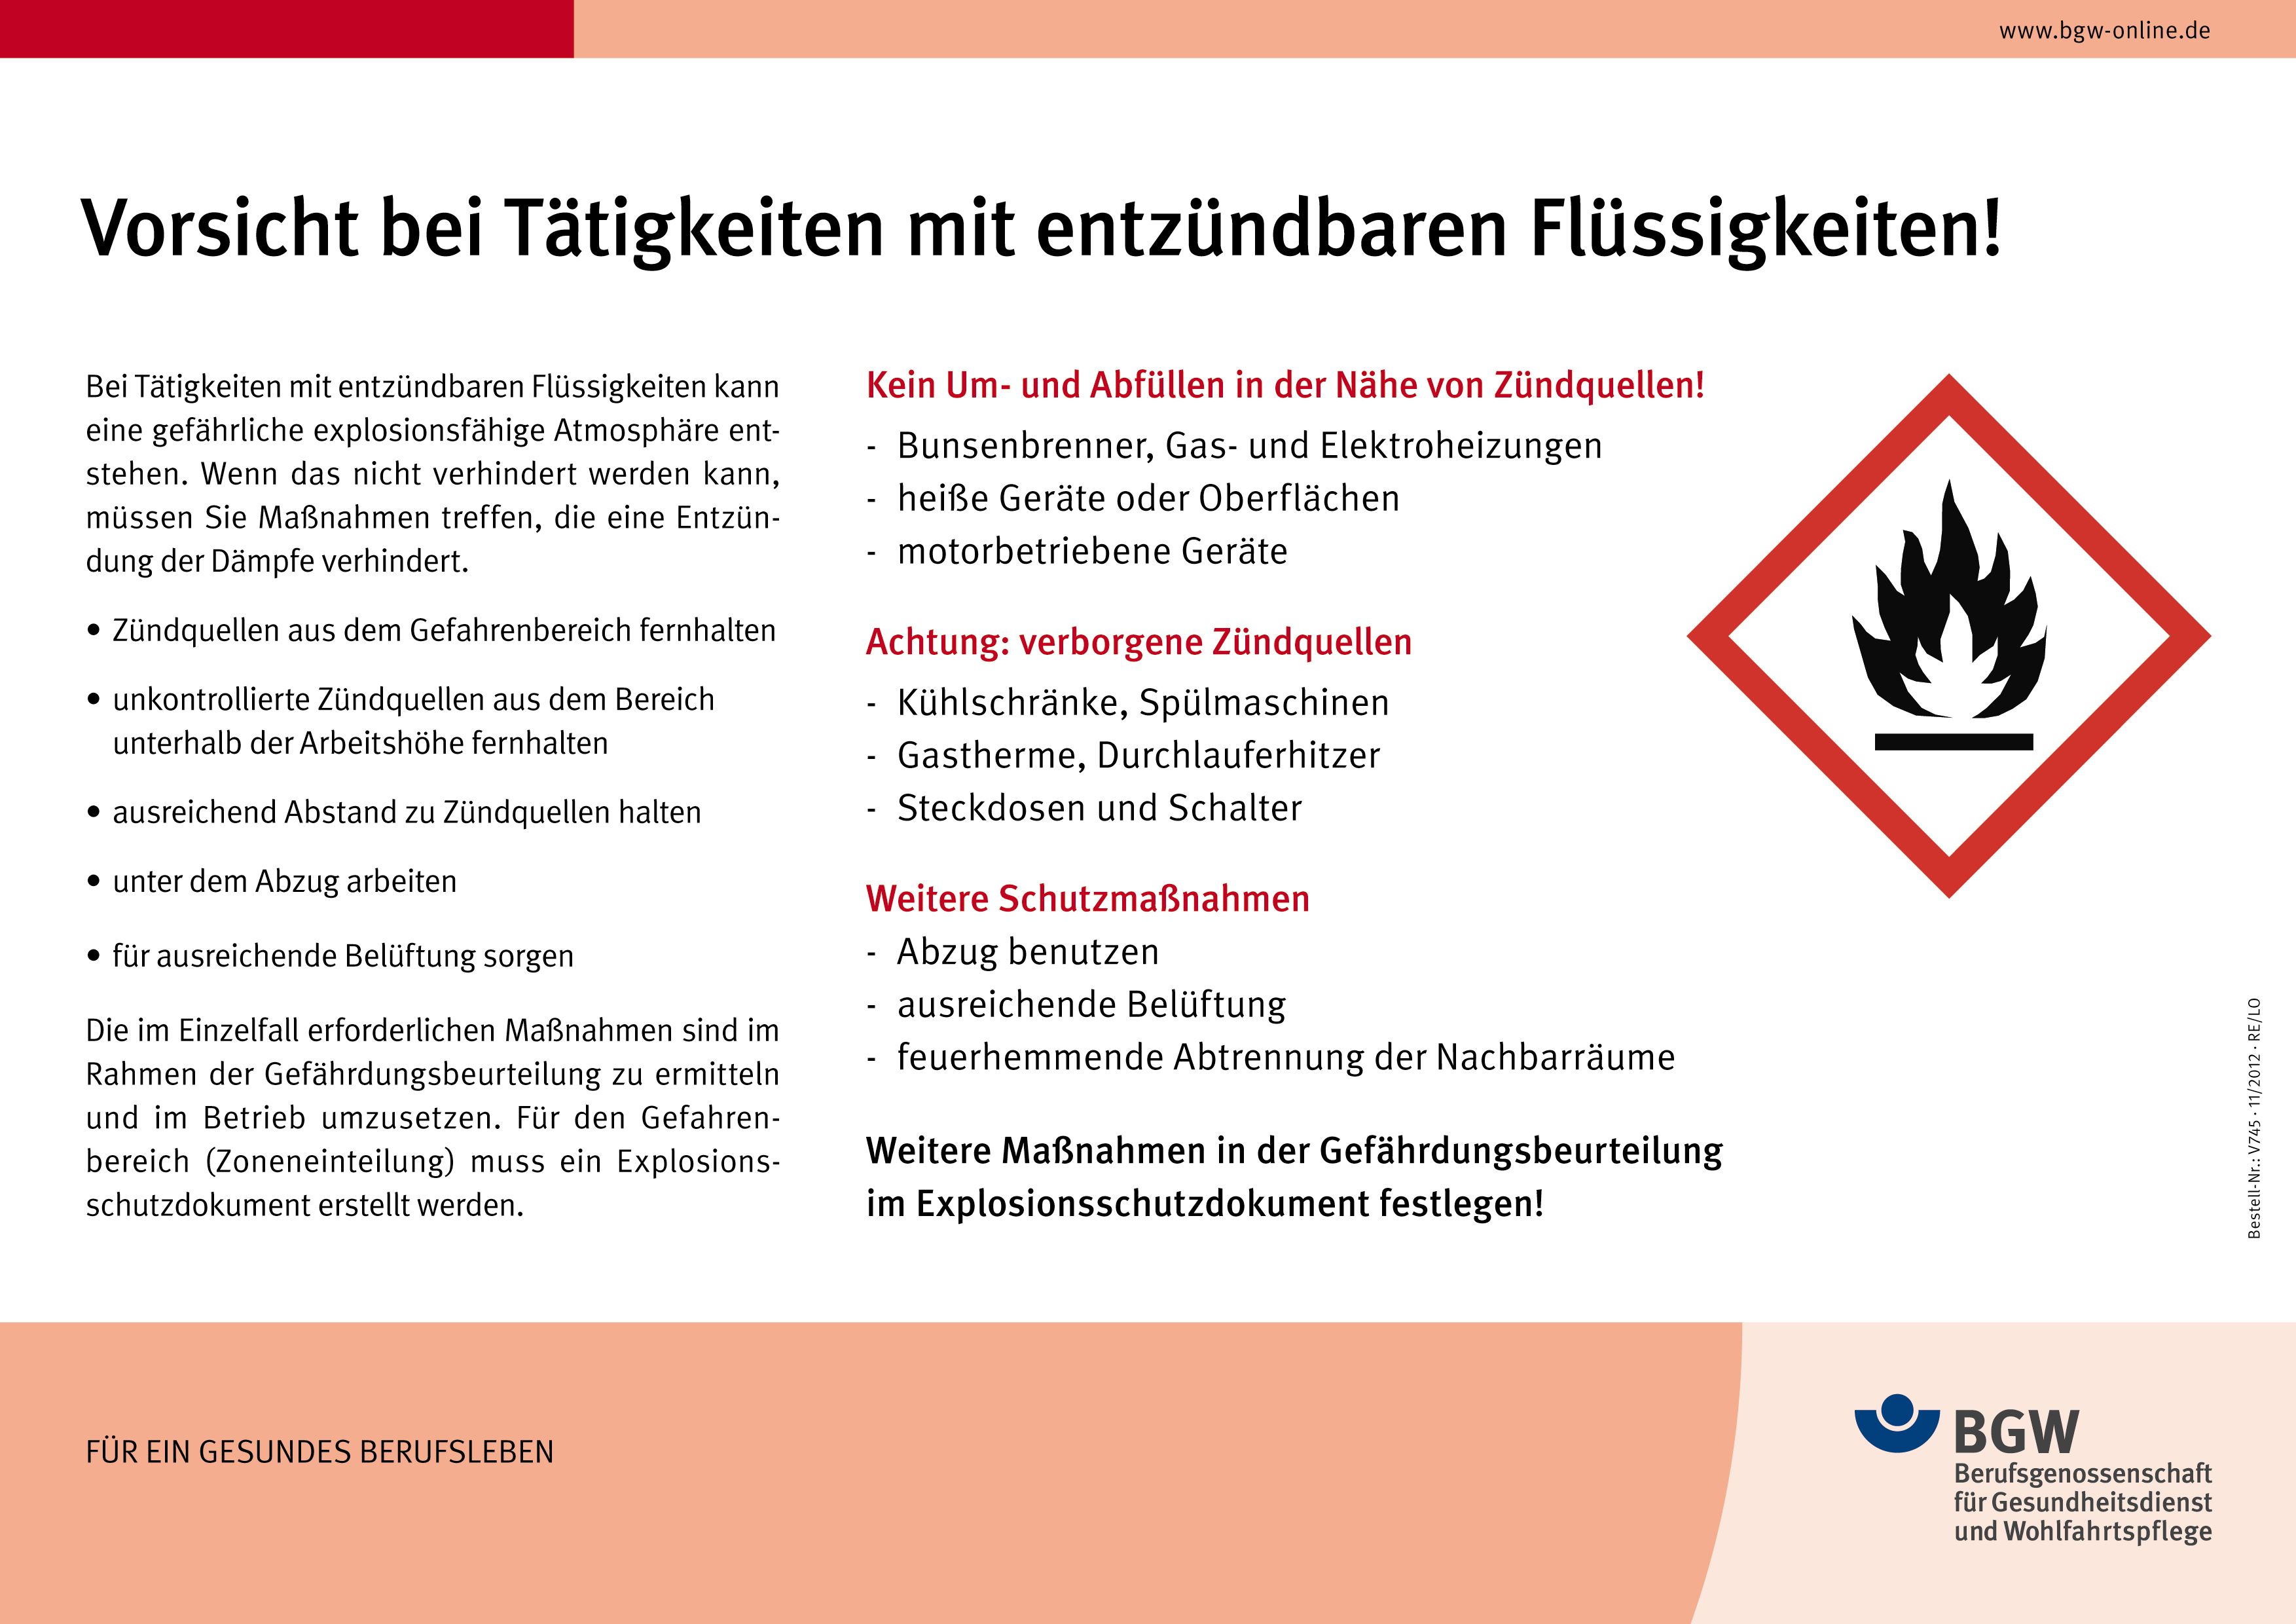 Plakat: Tätigkeiten mit entzündbaren Flüssigkeiten - Infotext mit Gefahrstoffsymbol (brennbar)